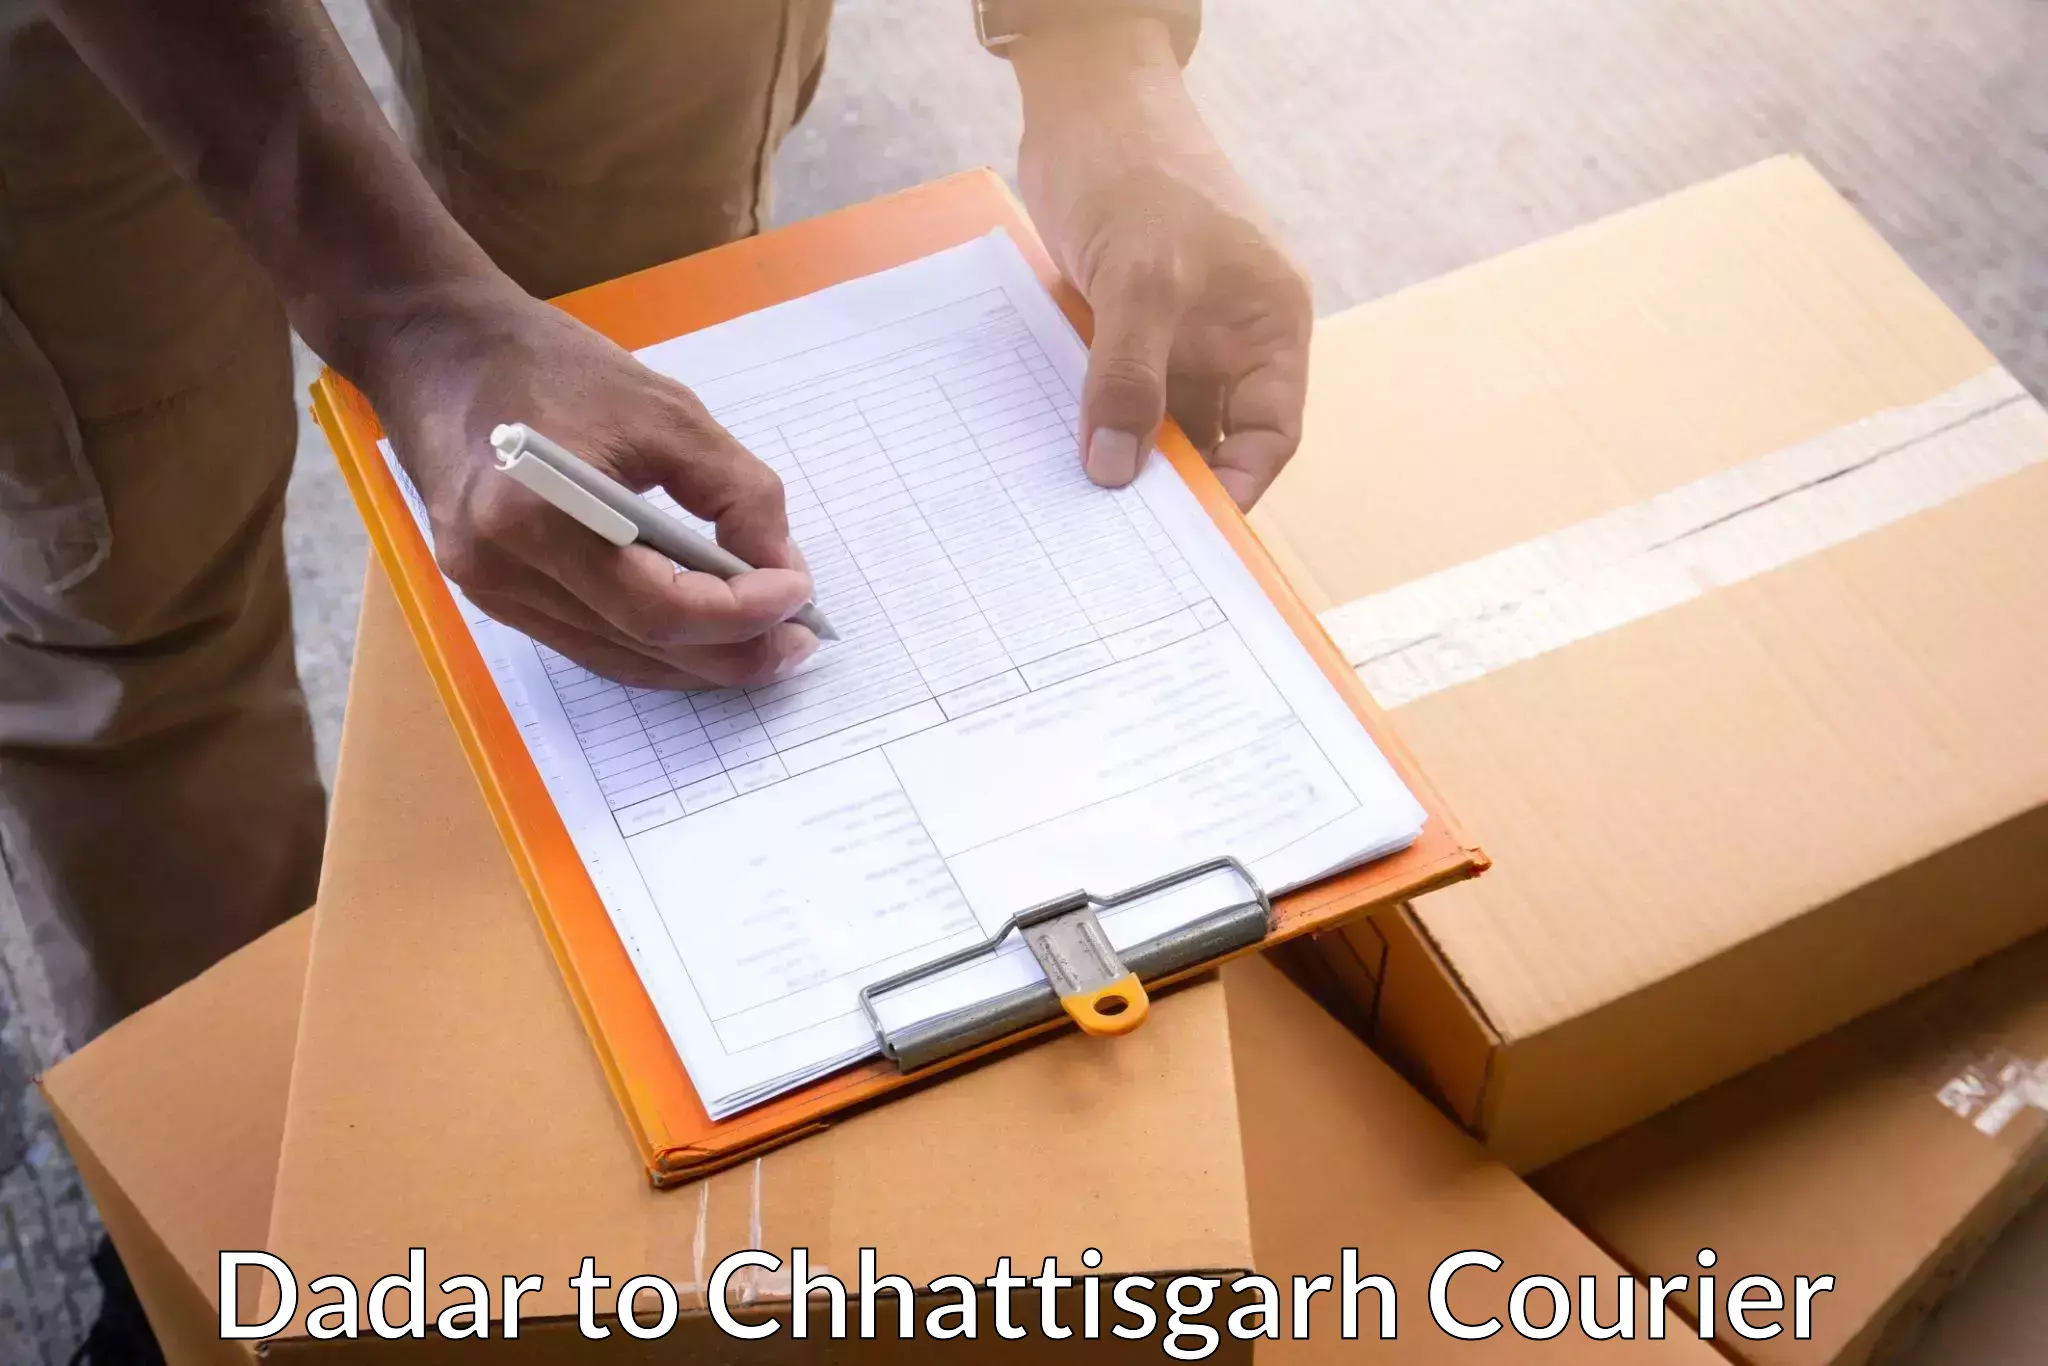 Modern courier technology Dadar to Jashpur